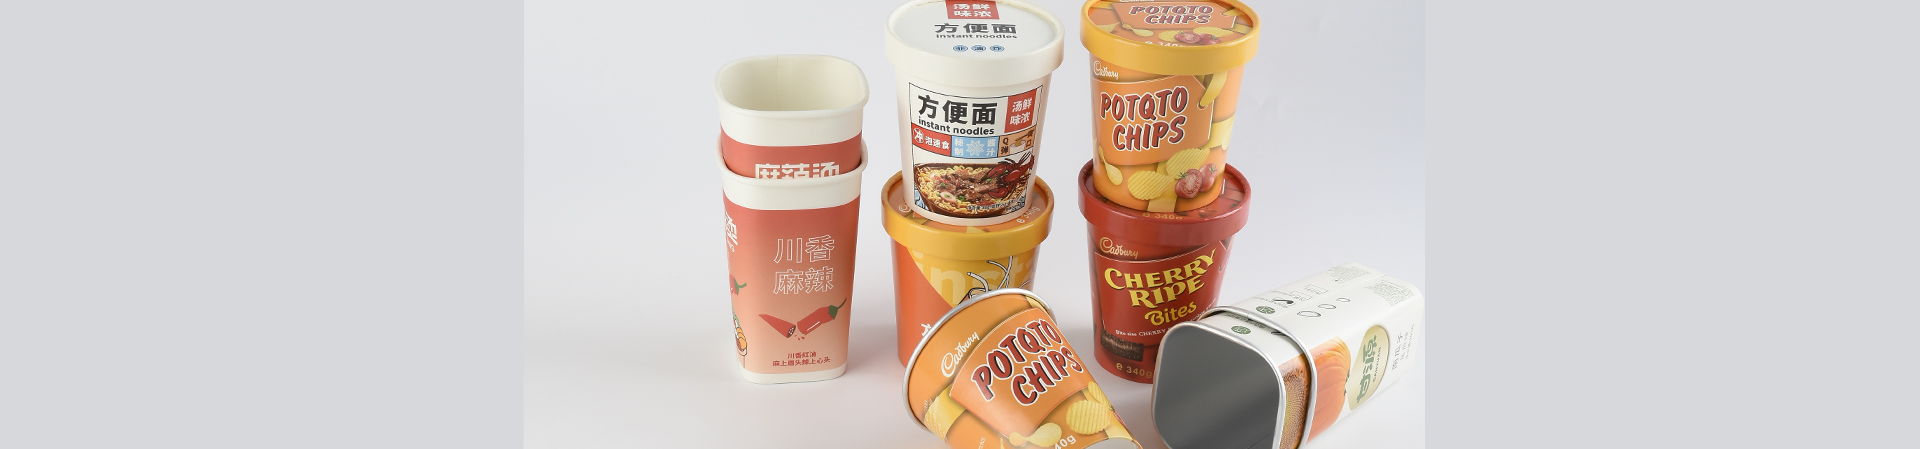 Food Packaging Cup